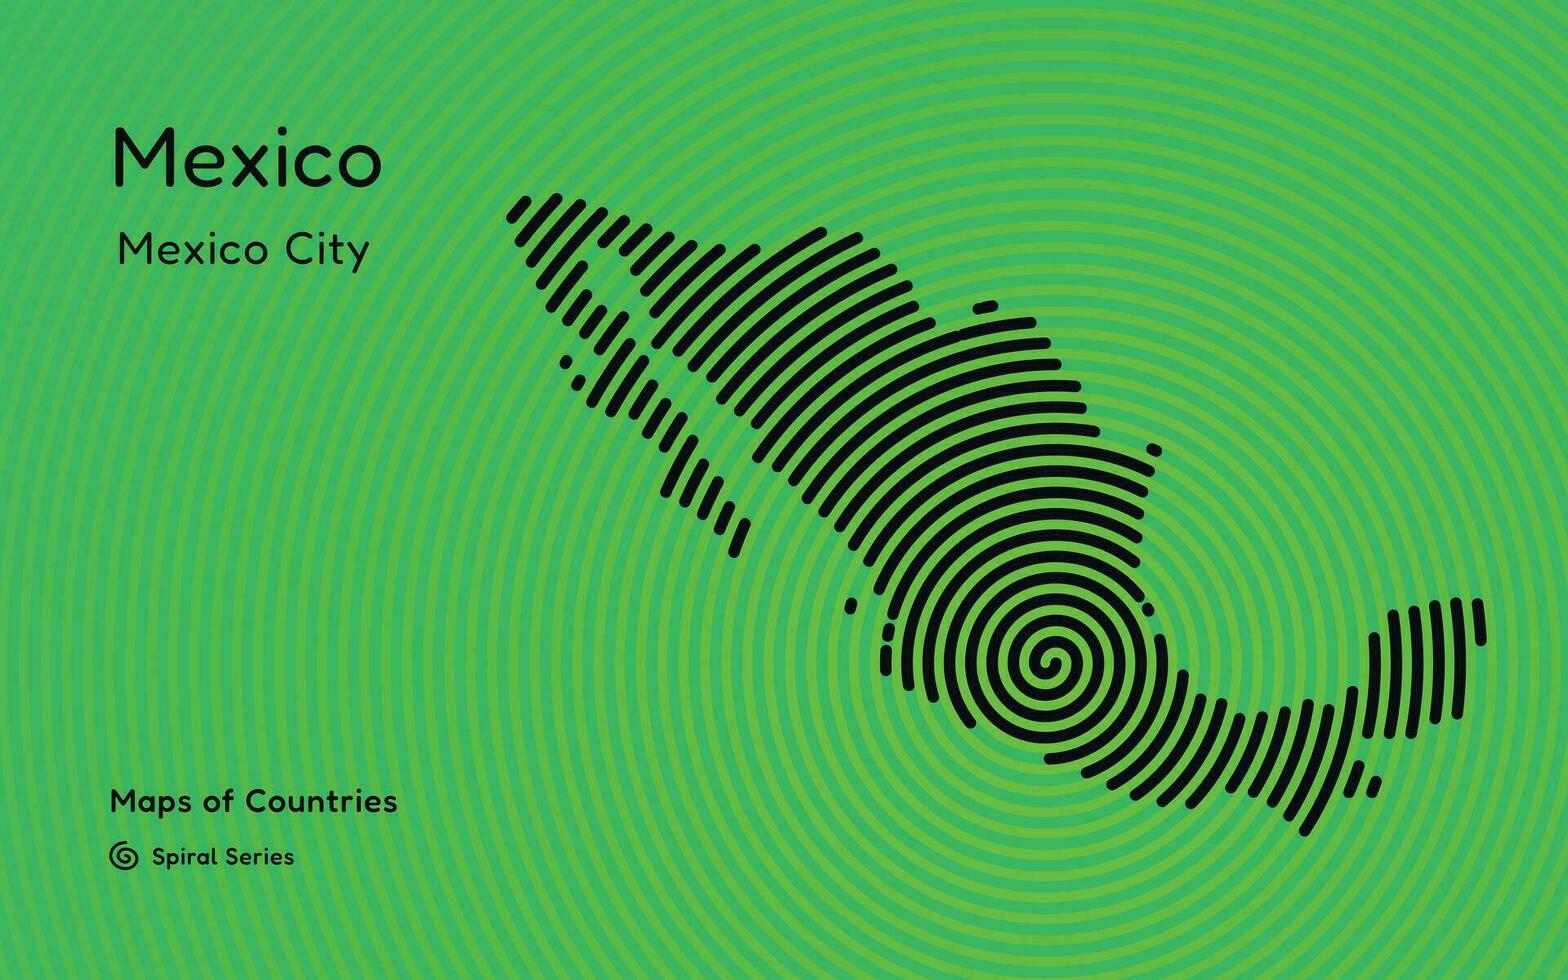 Mexico kaart met spiraal lijnen en een groen achtergrond vector